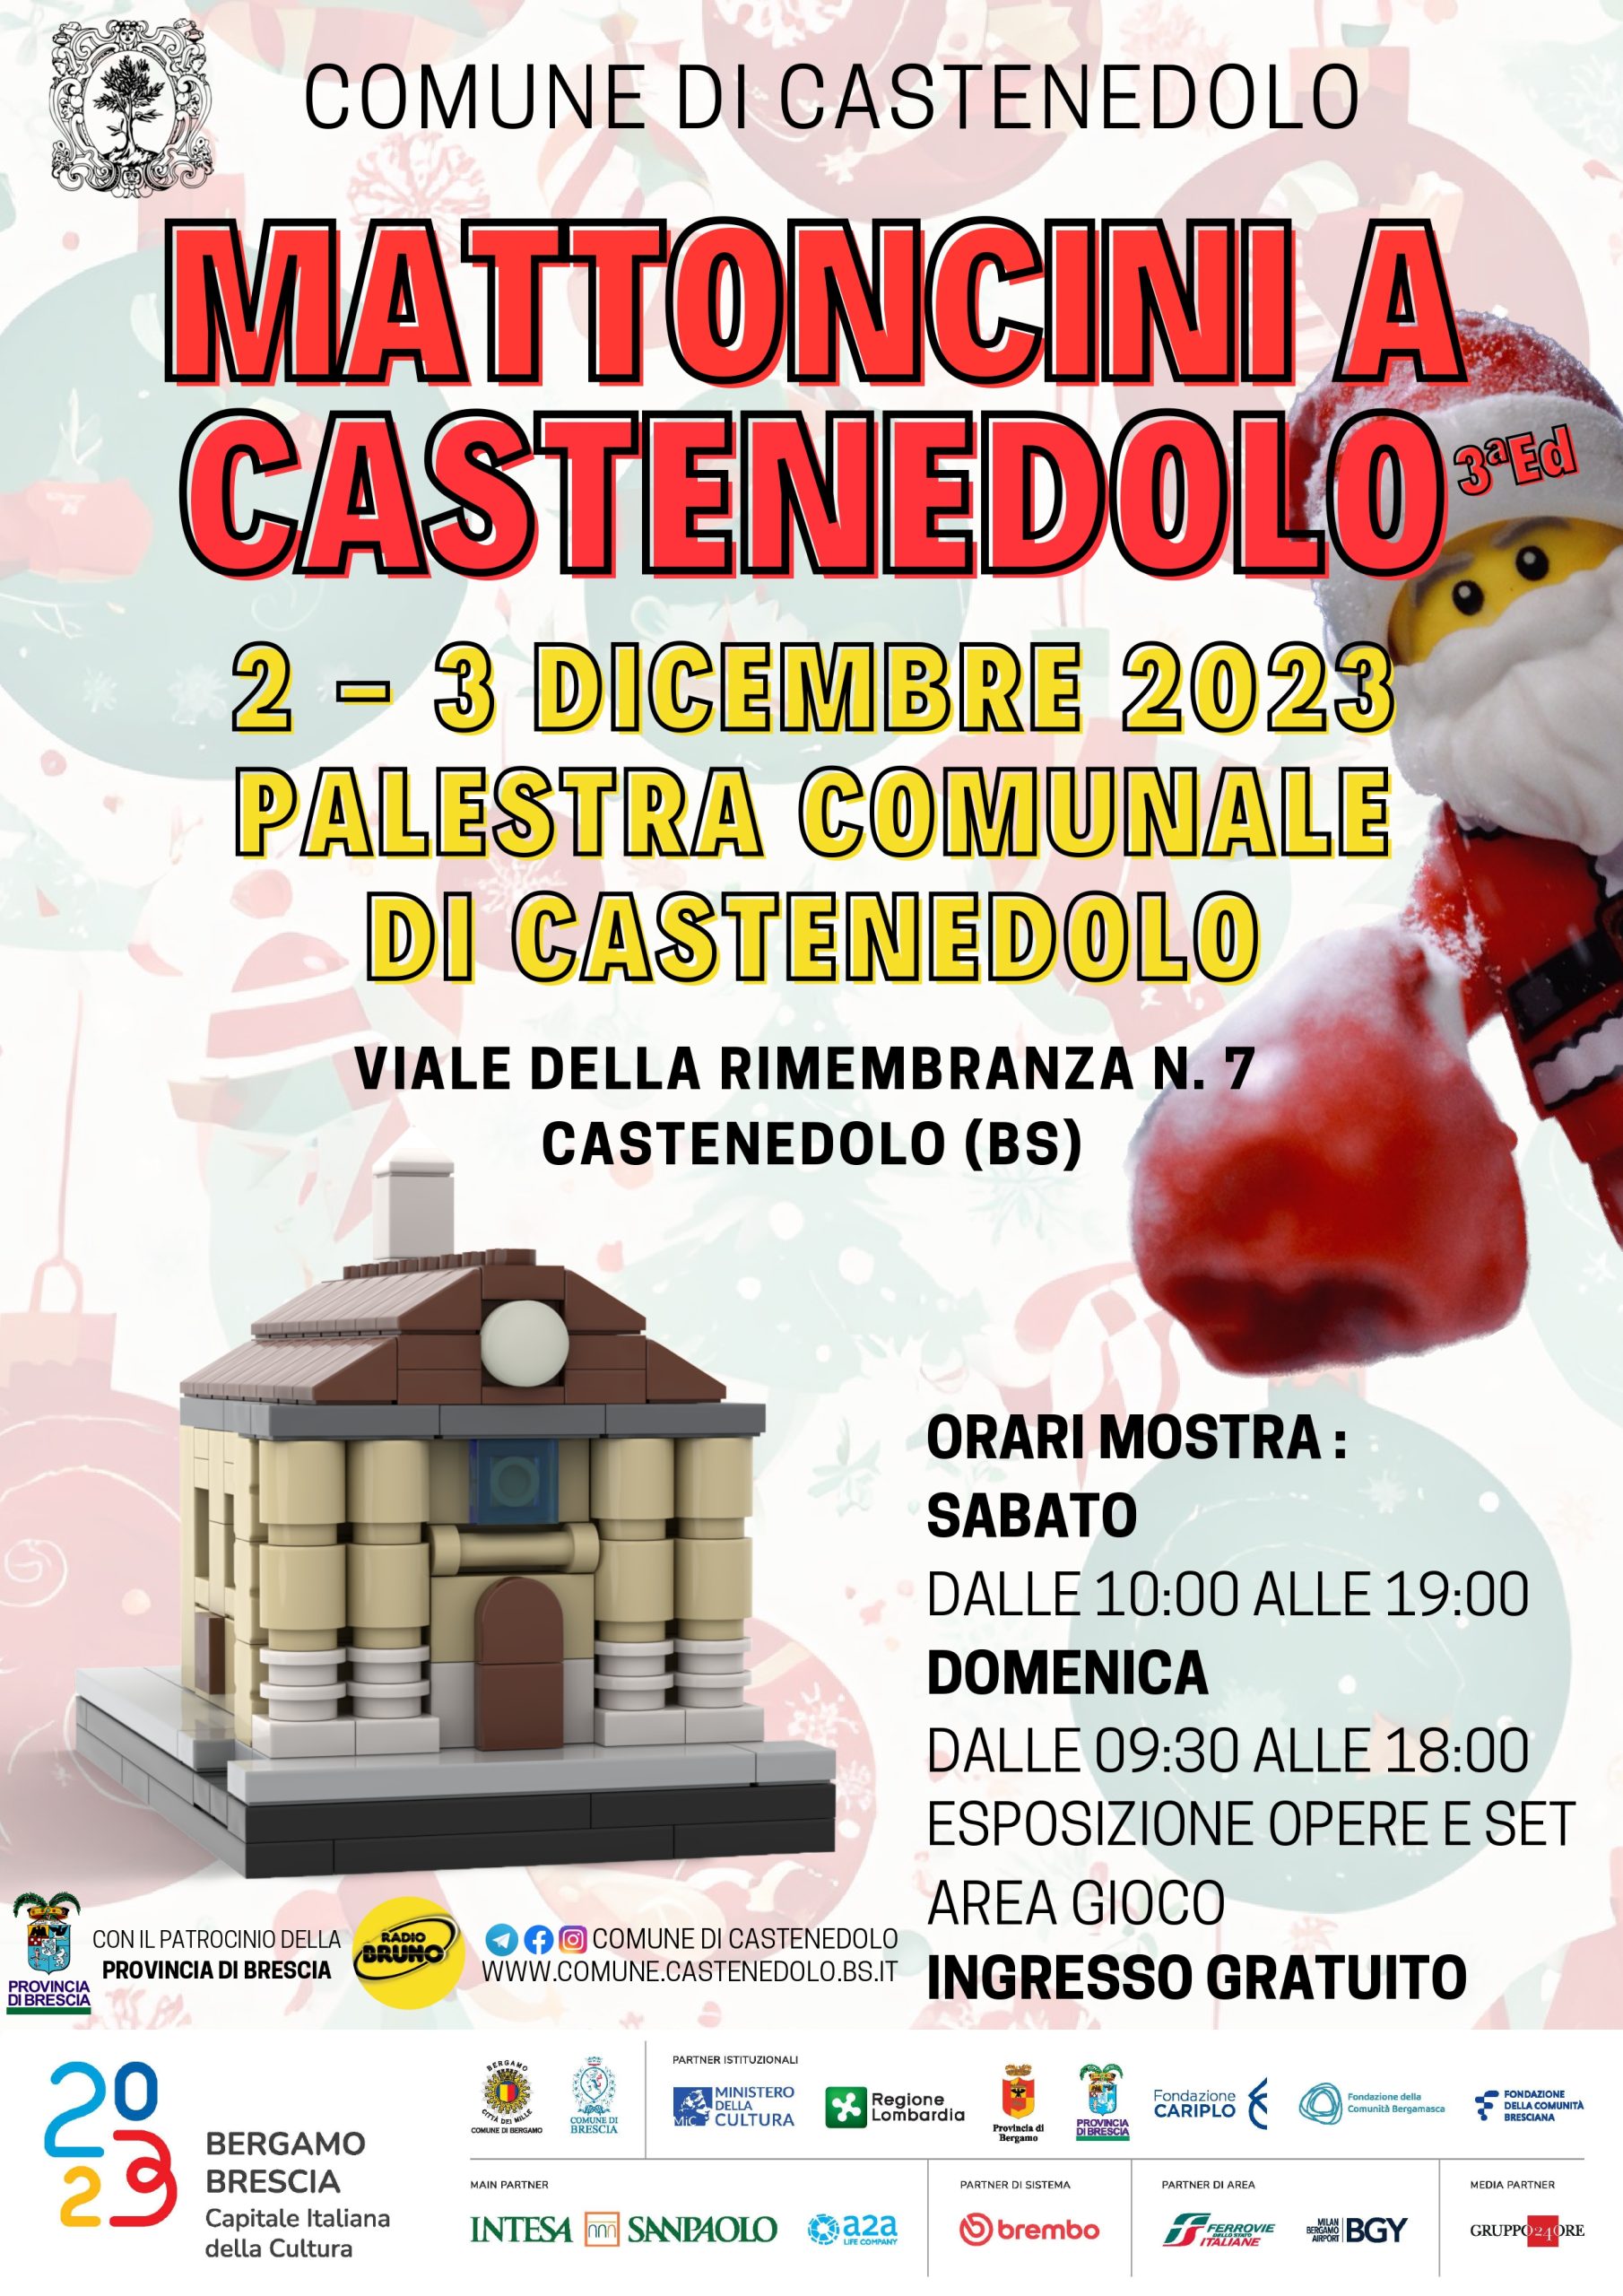 Il 2 e 3 dicembre, Mattoncini a Castenedolo!